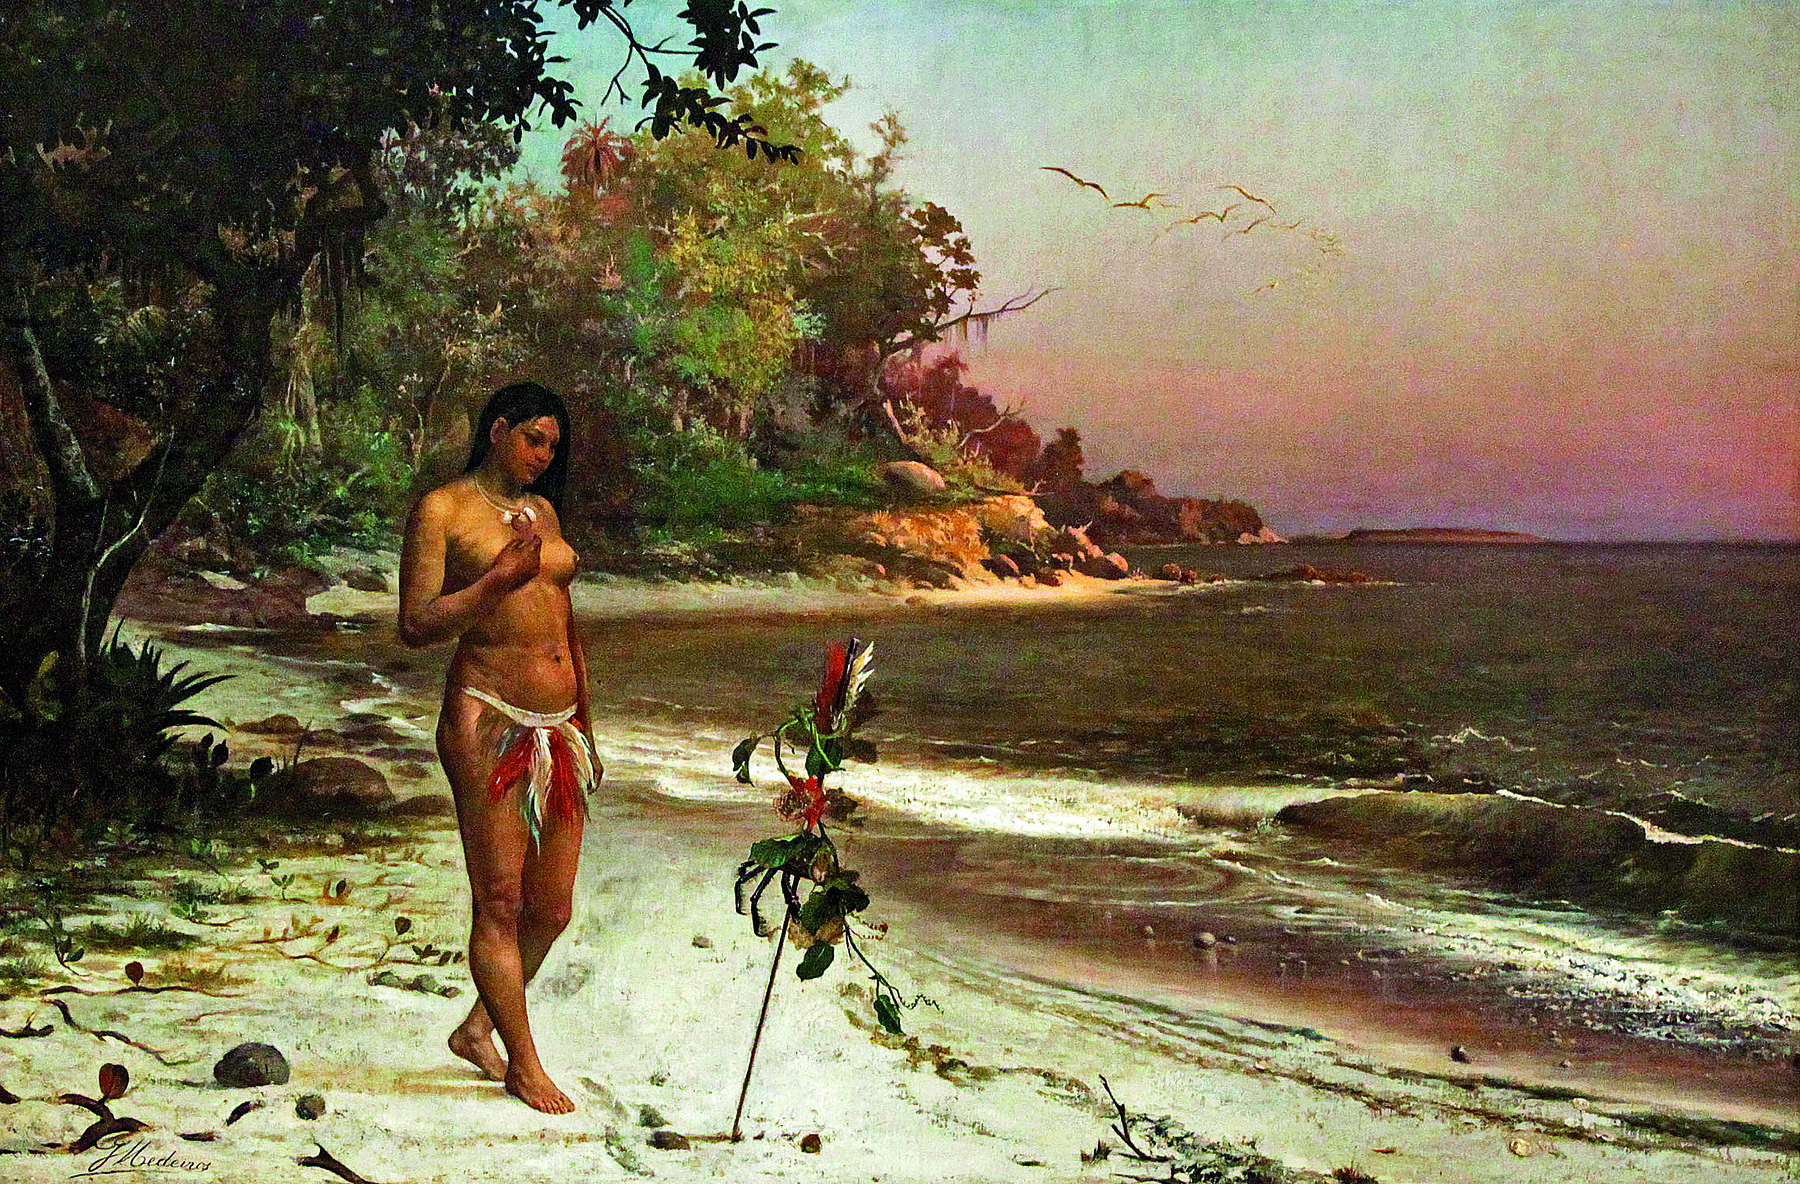 Pintura. Em uma praia, uma mulher indígena, com cabelos escuros, longos e lisos, com o peito desnudo, vestindo penas coloridas atadas a um cinto preso em sua cintura. Ela está em pé, sobre uma faixa de areia branca à margem de águas verdes. Em segundo plano, vegetação densa.